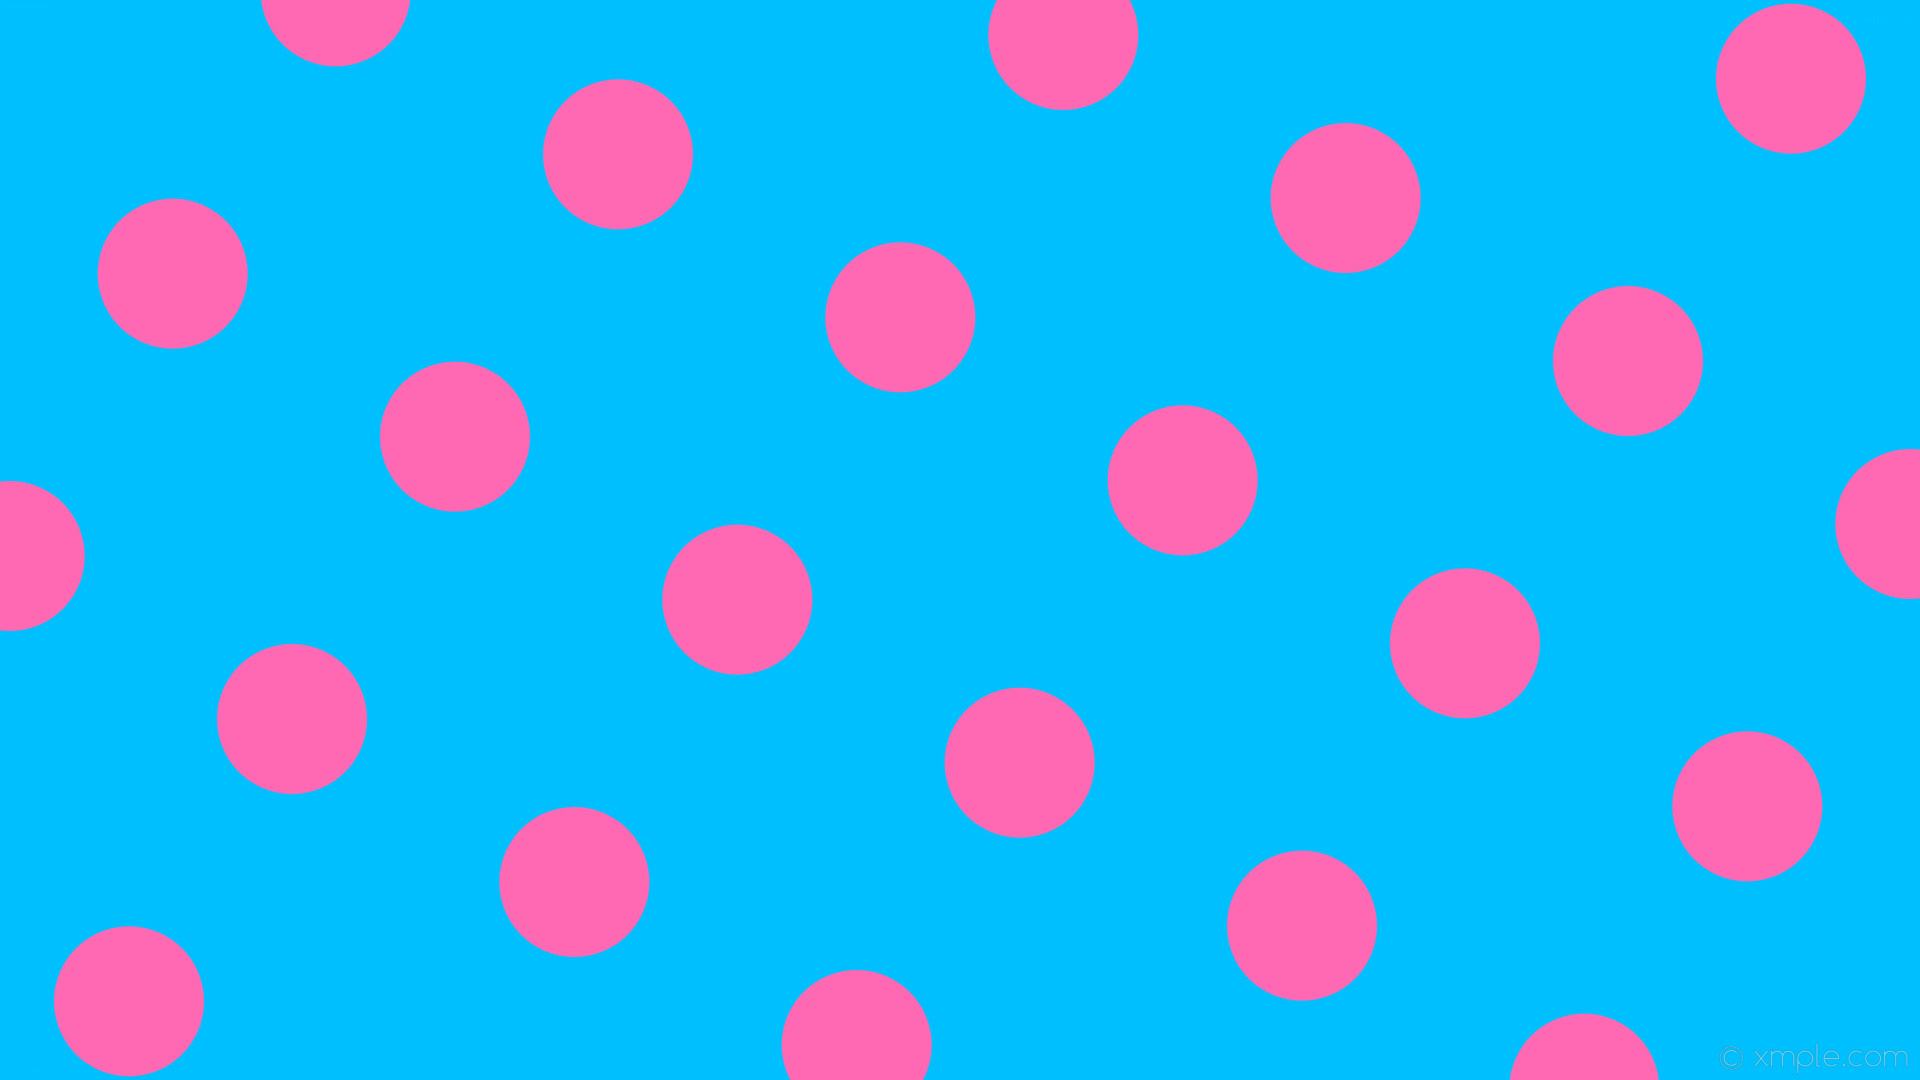 1920x1080 wallpaper spots blue dots polka pink deep sky blue hot pink #00bfff #ff69b4  240